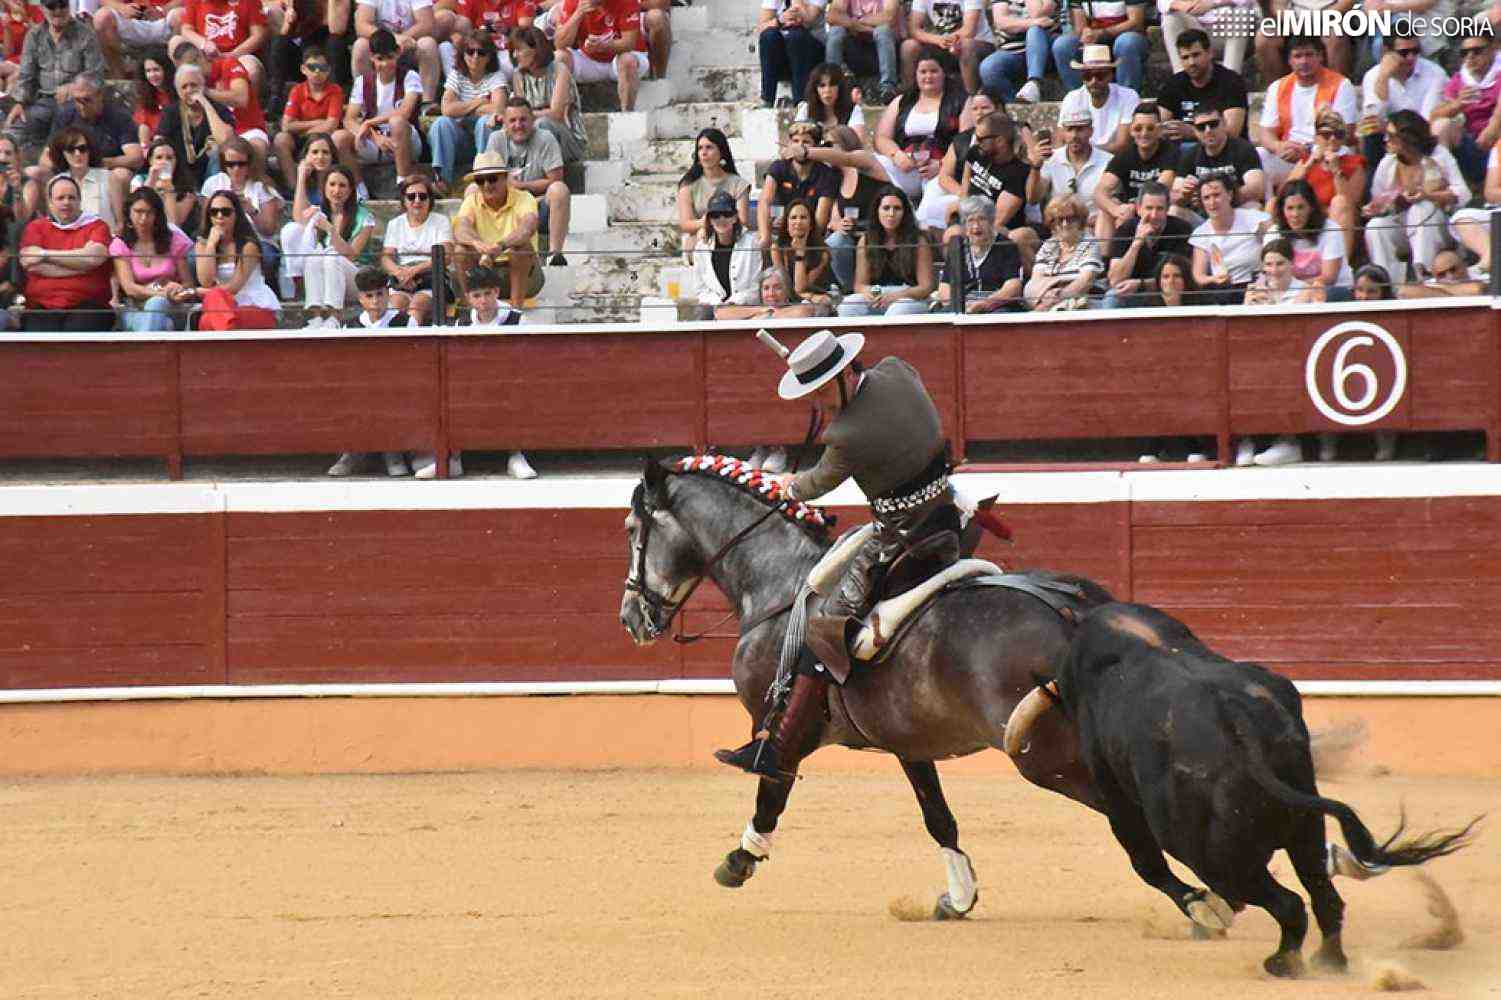 Diego Ventura triunfa en corrida de rejones en Soria